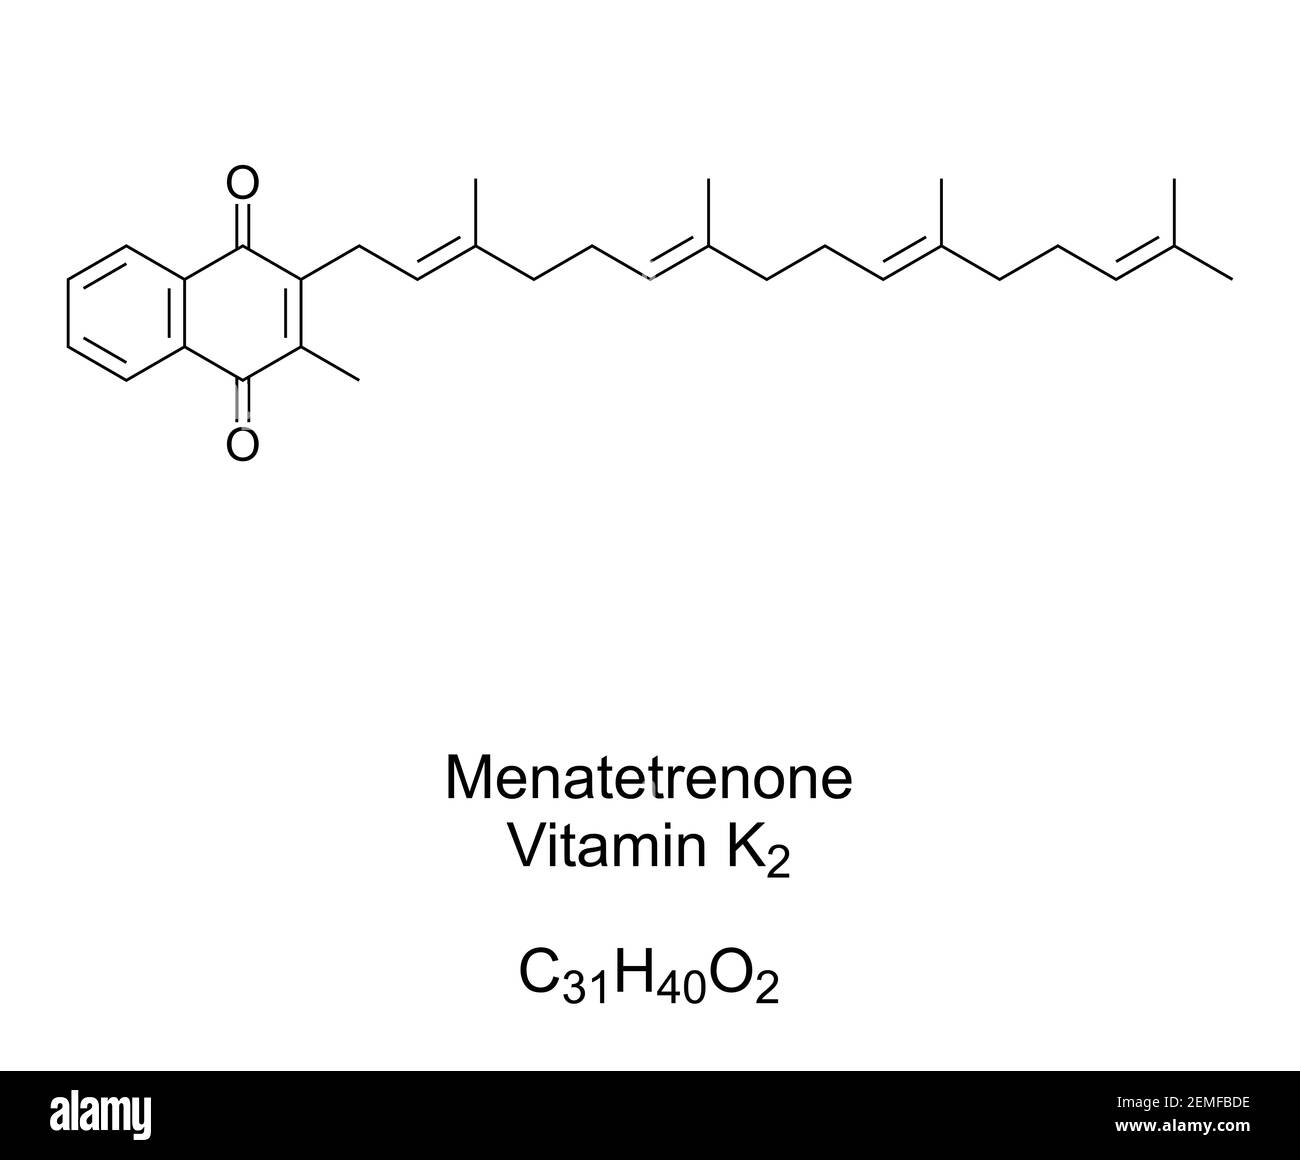 Menatetrenone, vitamina K2, menaquinone, formula chimica e struttura scheletrica. Noto anche come MK-4, è una delle 9 forme di vitamina K2. Foto Stock